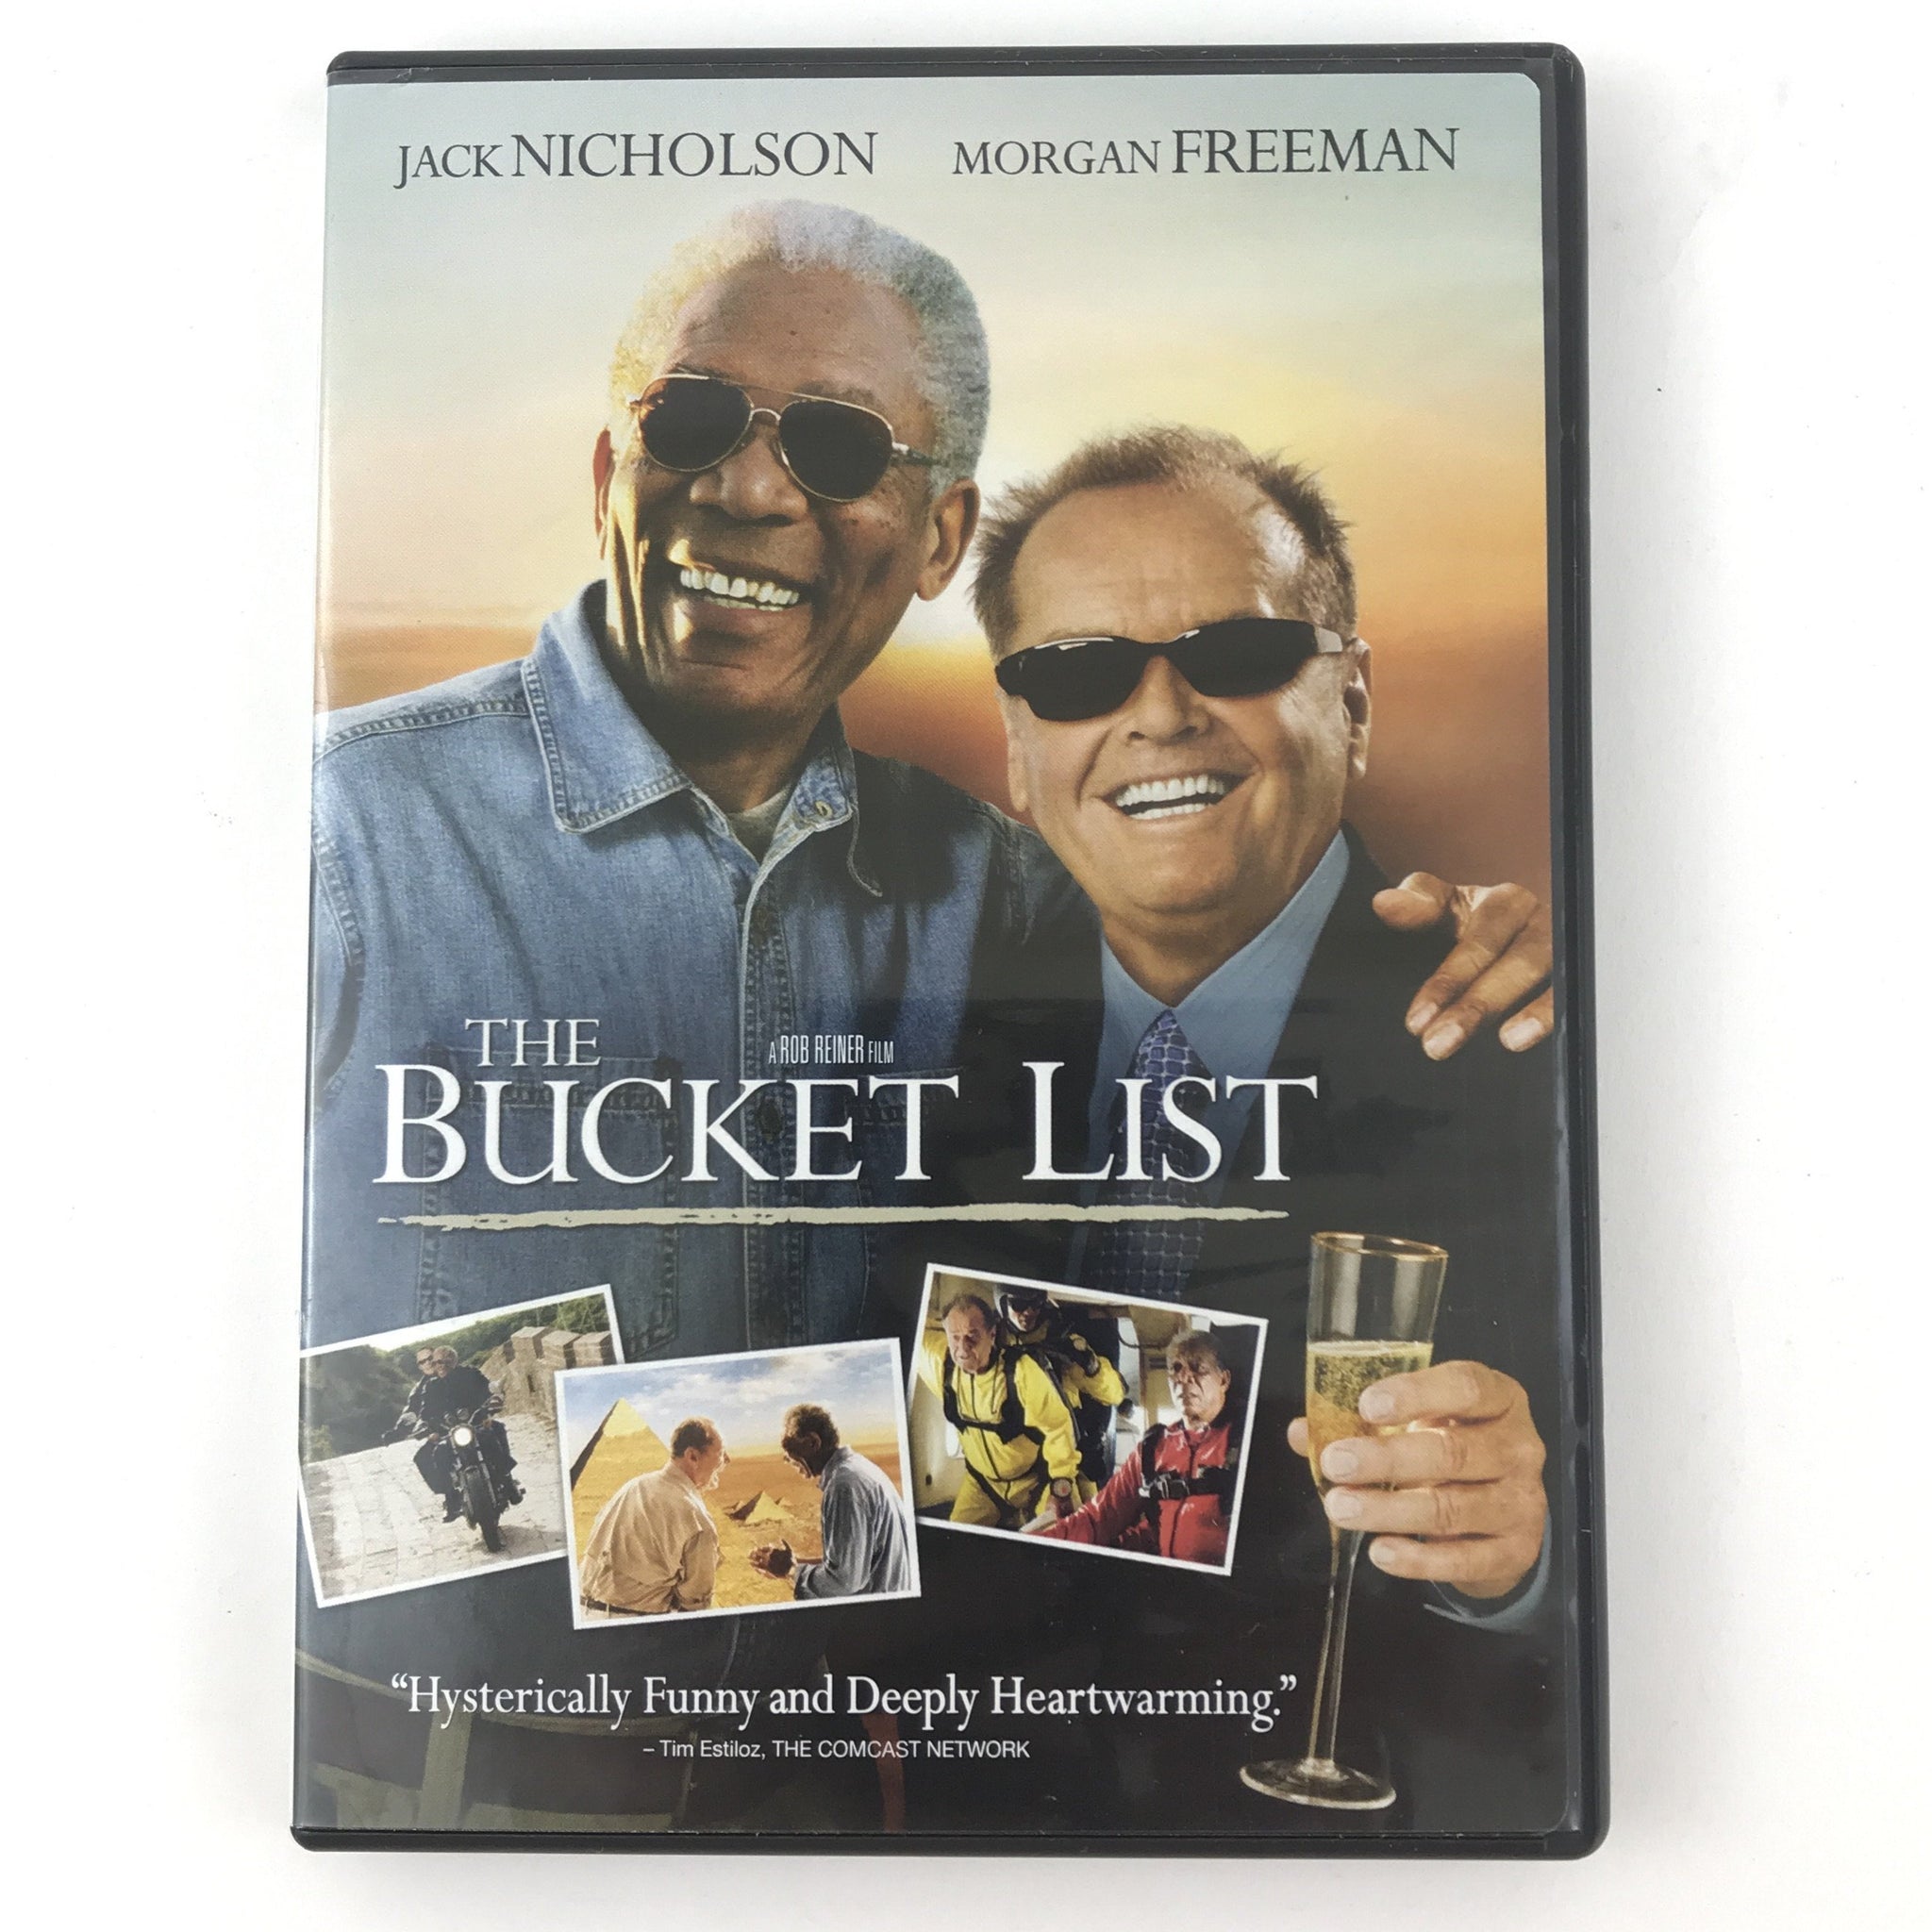 bucket list movie poster